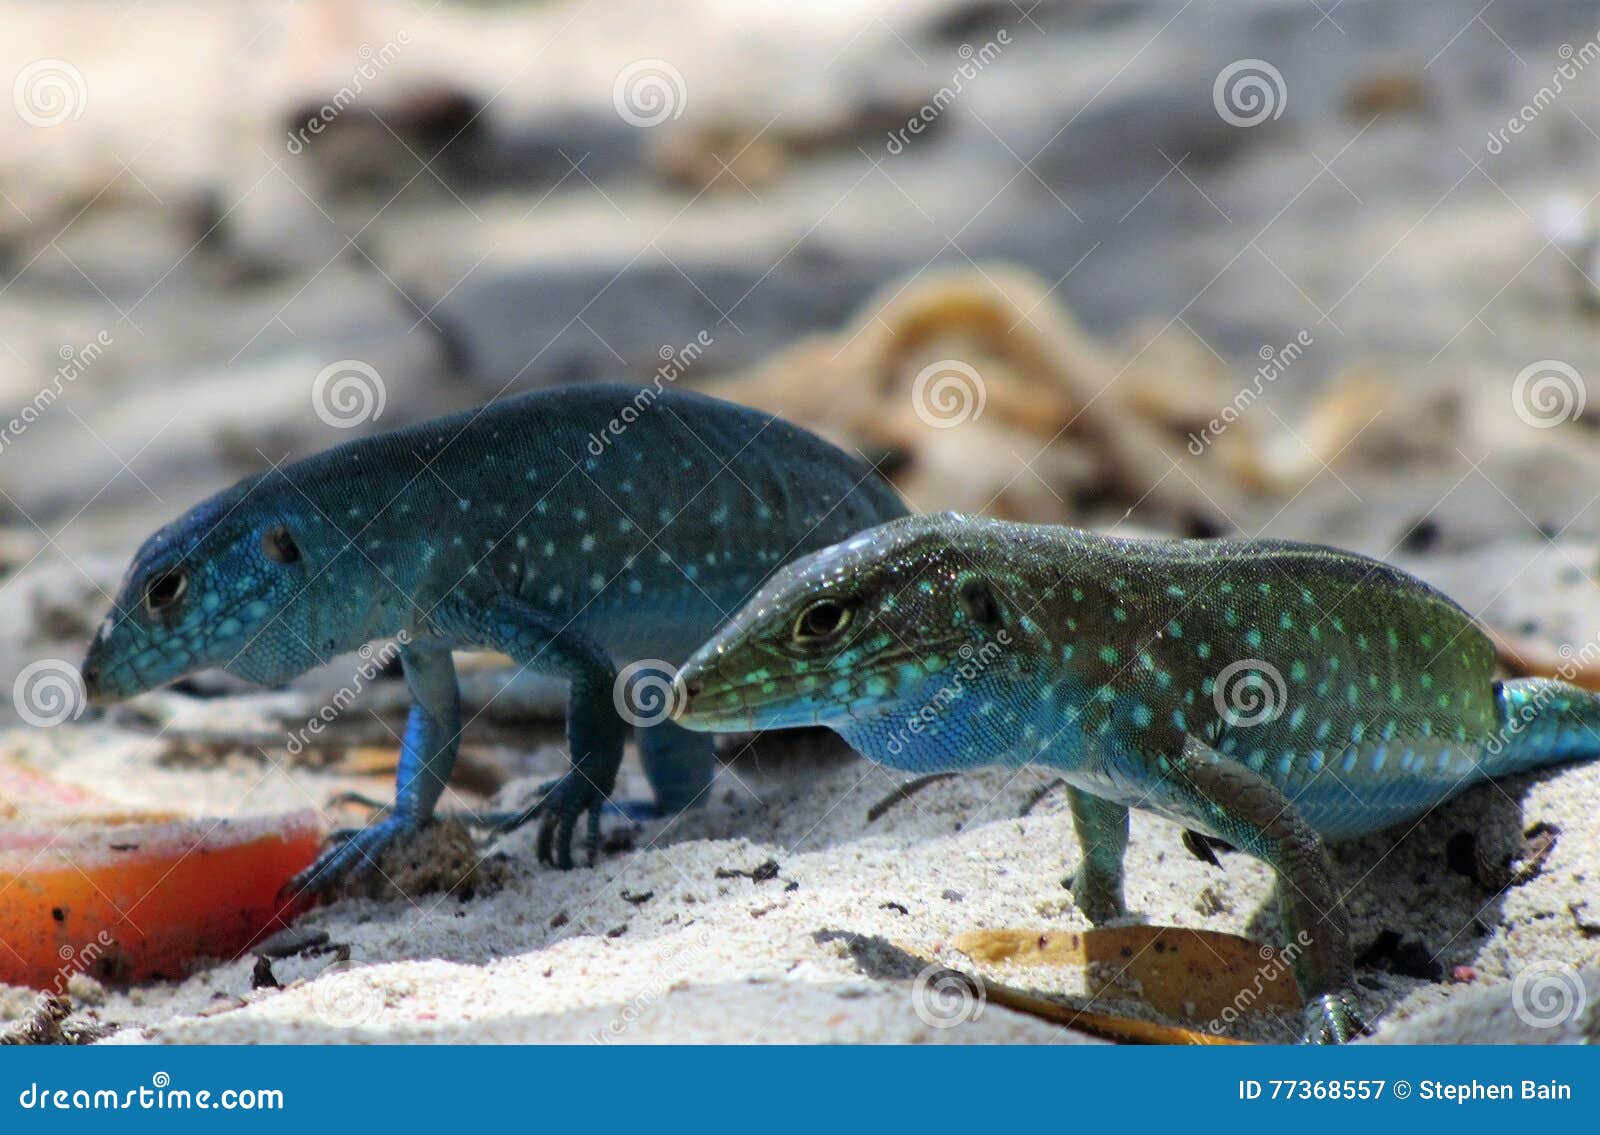 blue lizards on the beach